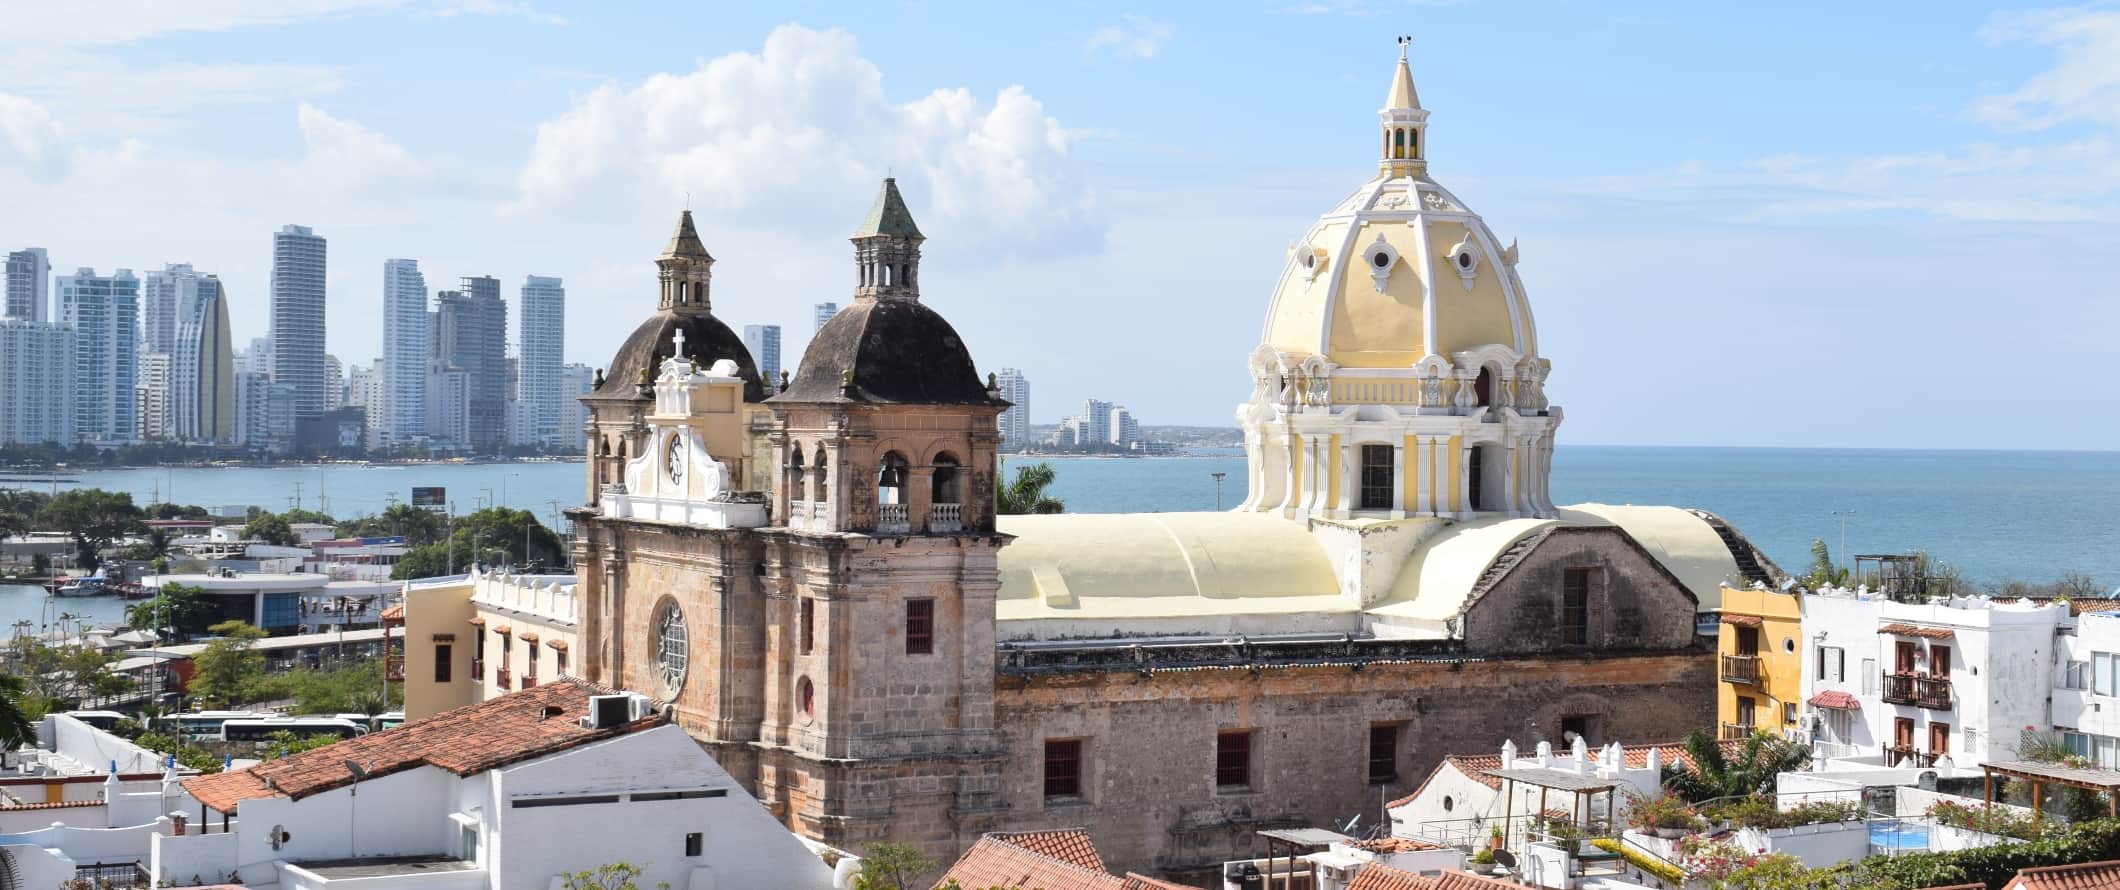 Vista da cidade de Cartagena, Colômbia, com uma grande igreja histórica de cúpula em primeiro plano e arranh a-céus modernos ao fundo.